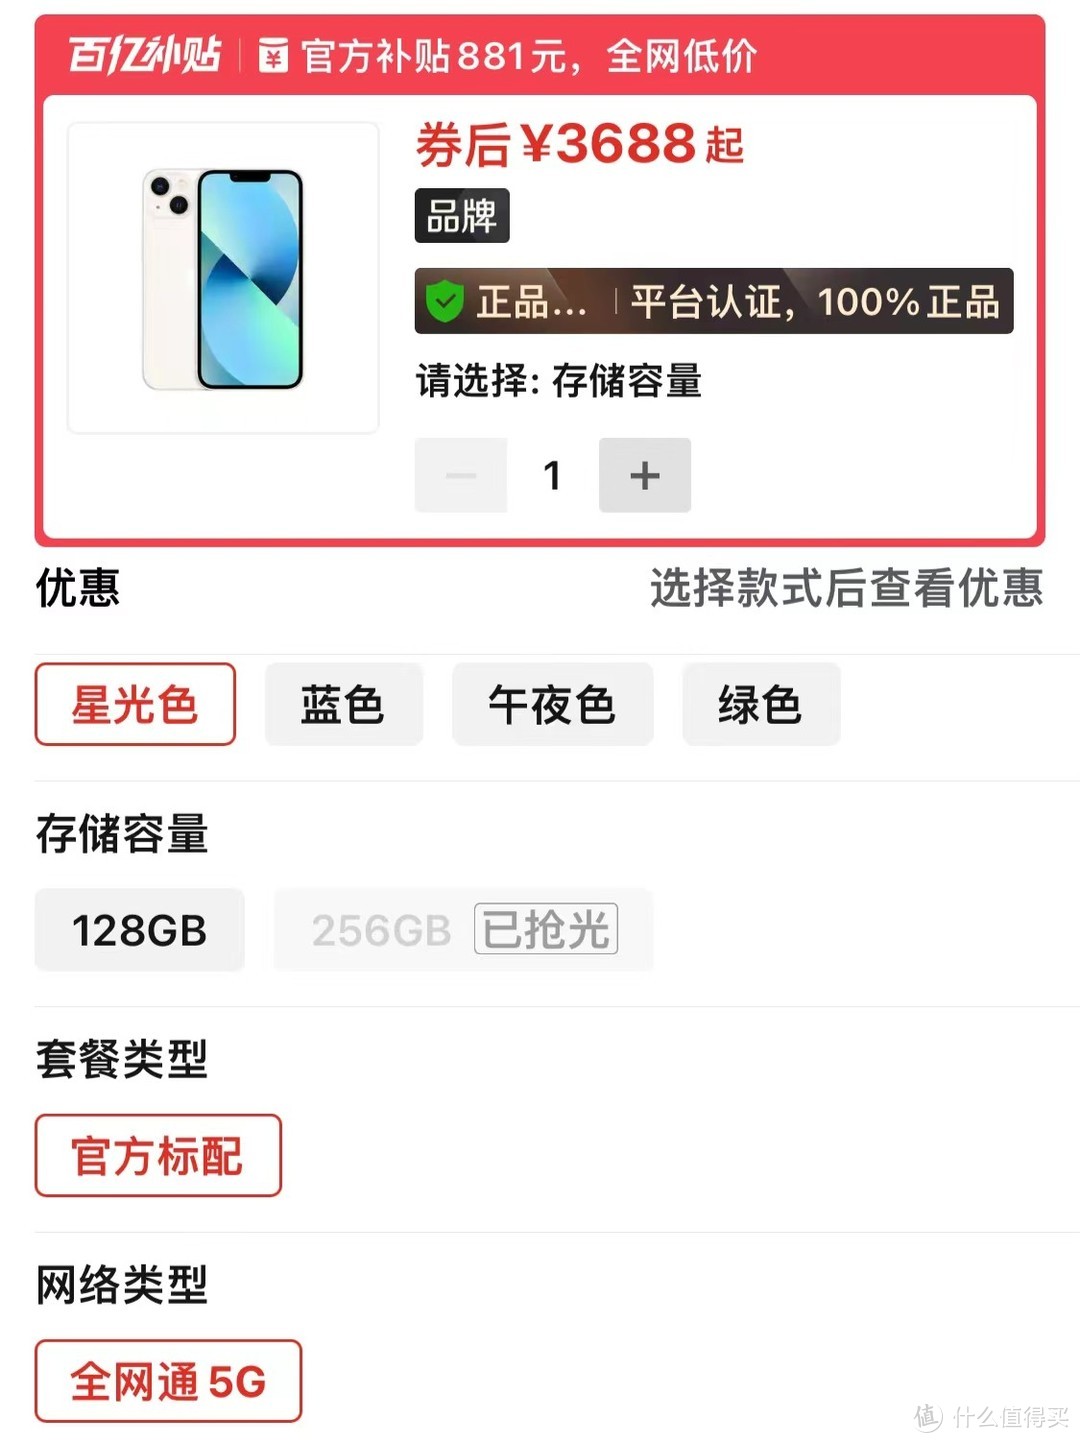 iphone13跌至小米价,仅3688元,还要国产高端机吗?